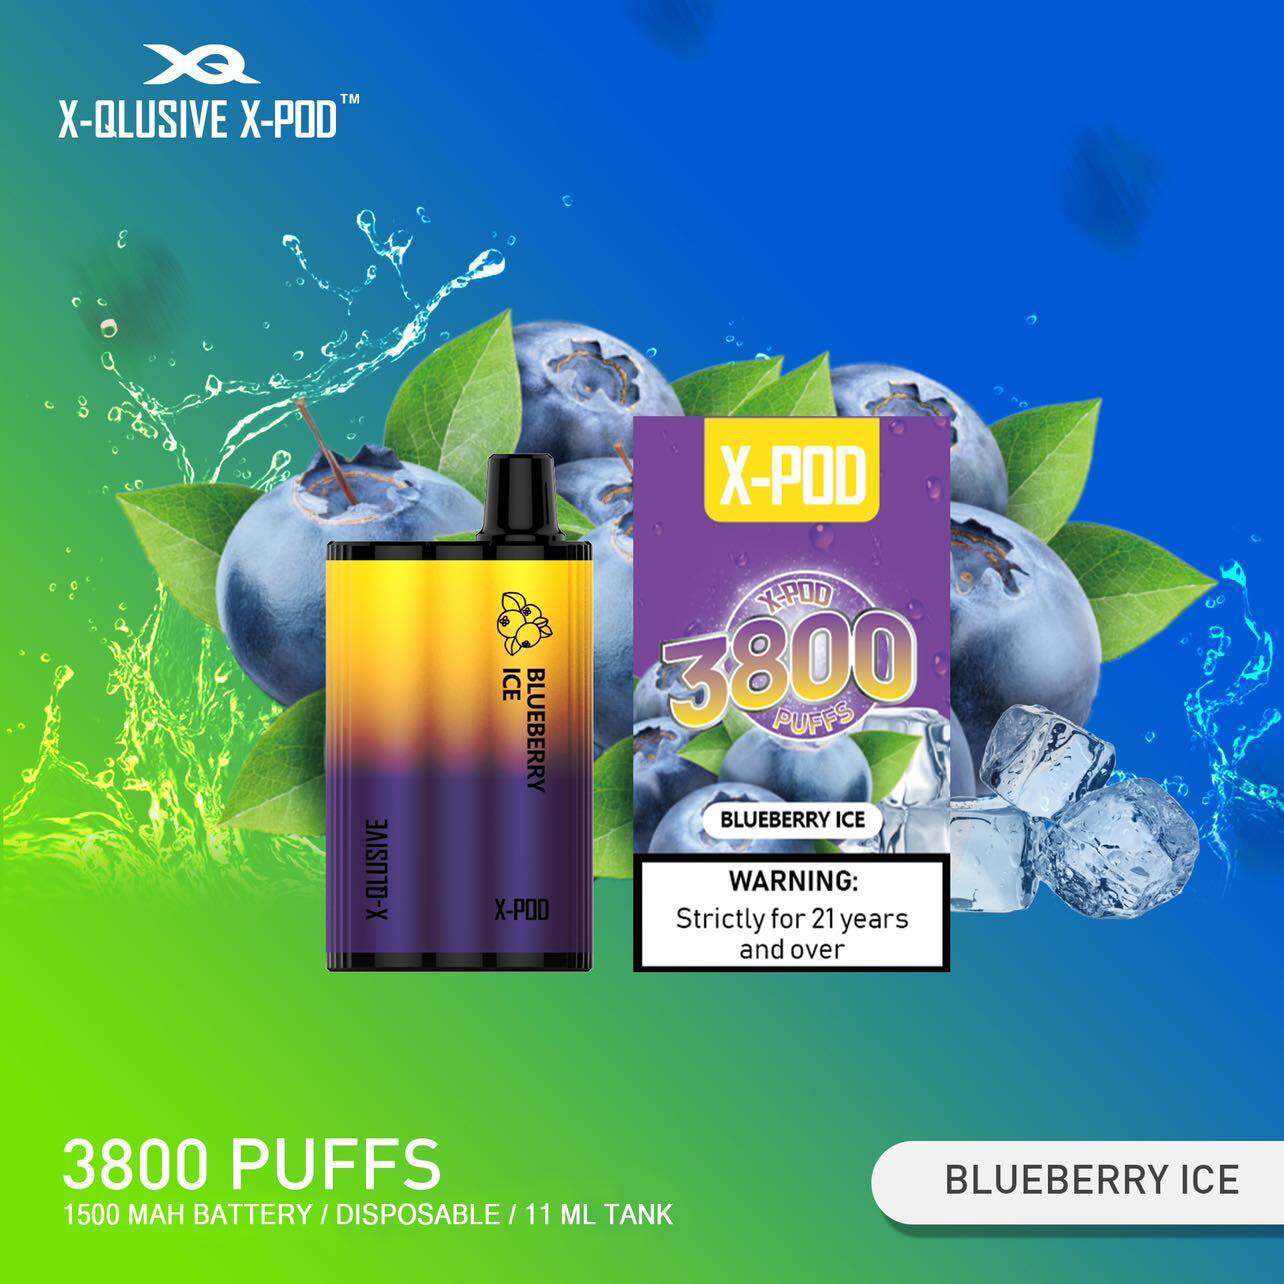 XPOD Blueberry Ice